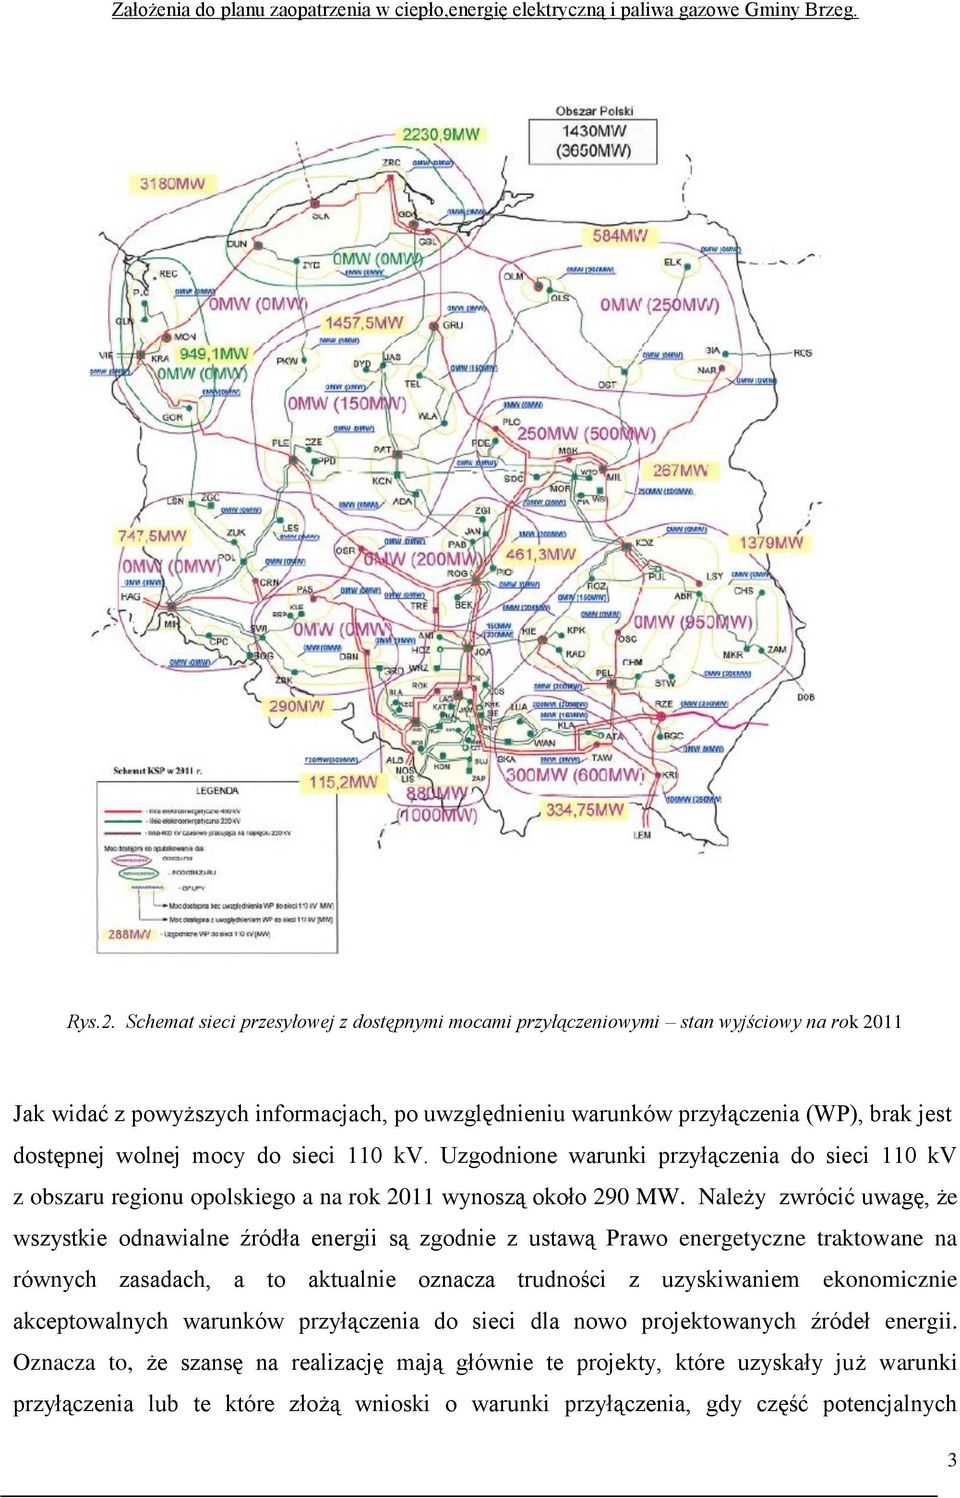 mocy do sieci 110 kv. Uzgodnione warunki przyłączenia do sieci 110 kv z obszaru regionu opolskiego a na rok 2011 wynoszą około 290 MW.